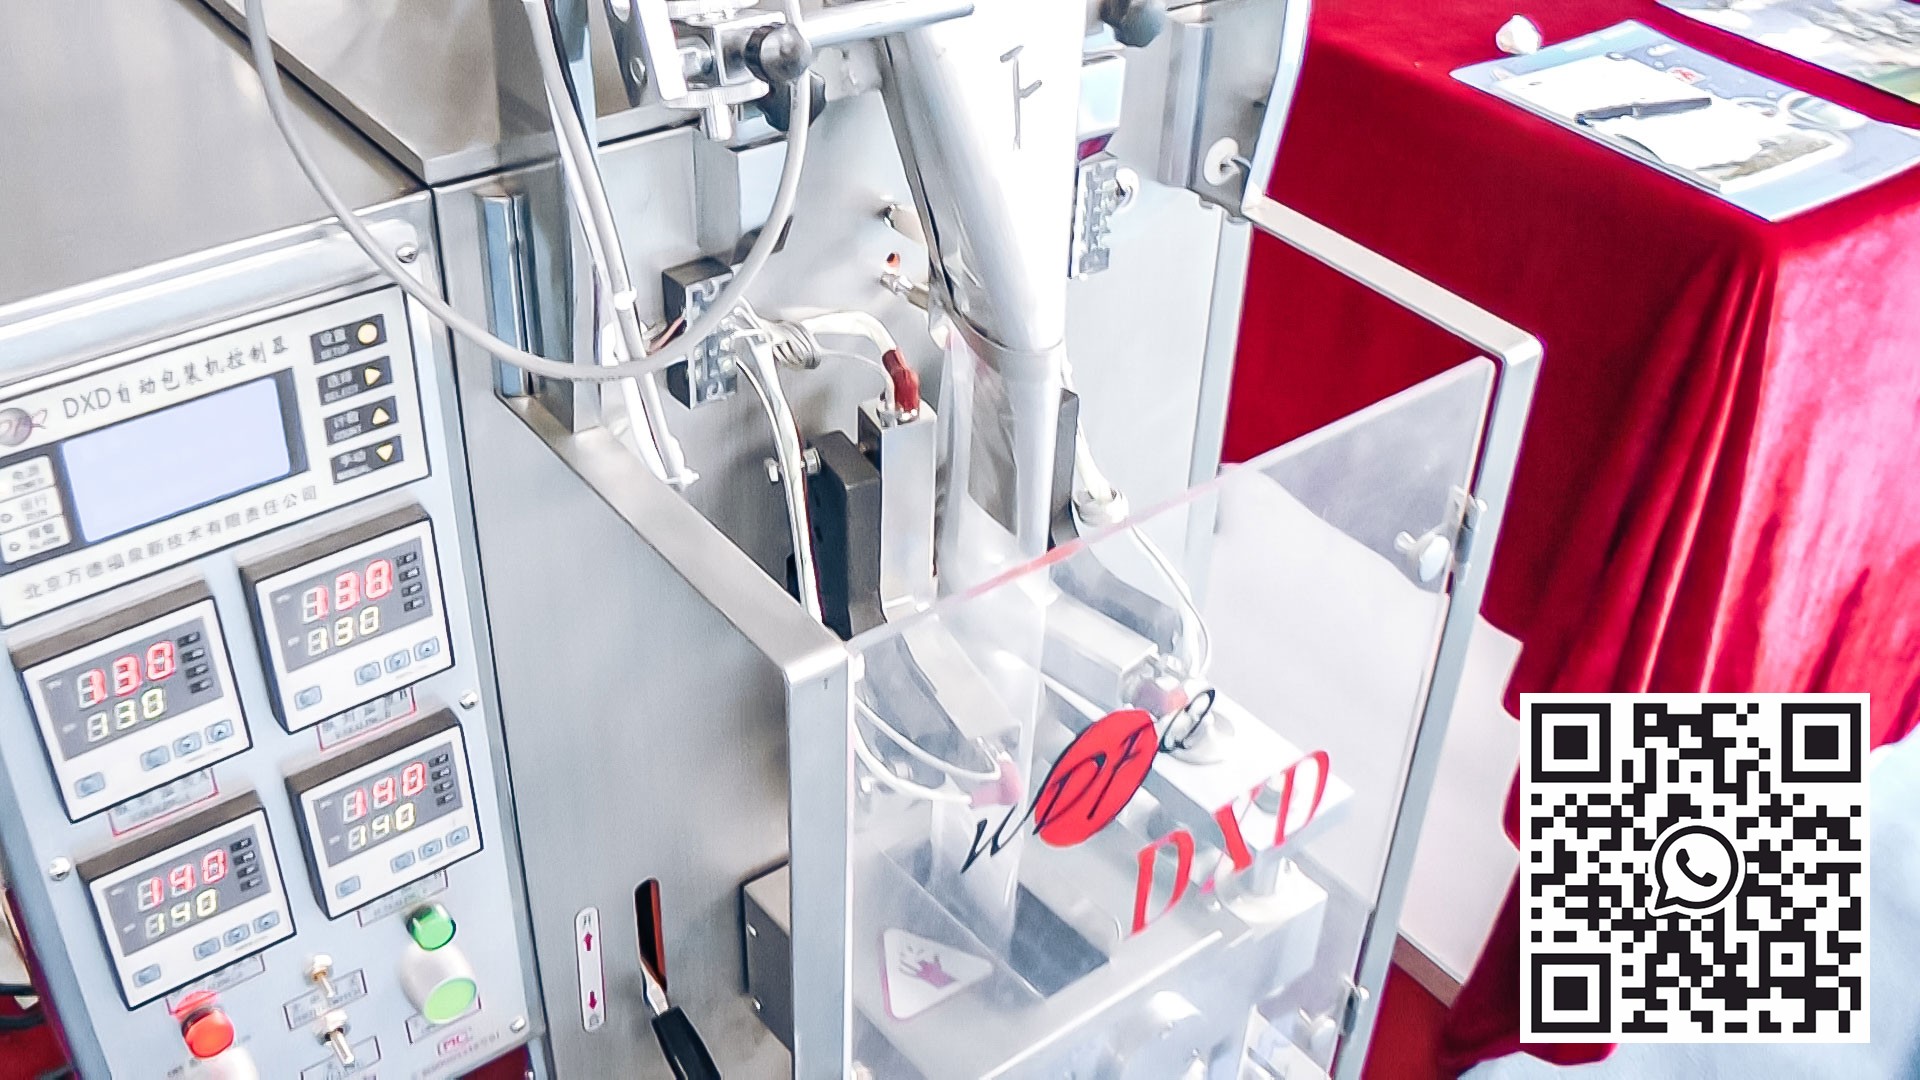 معدات أوتوماتيكية لتعبئة المساحيق والحبيبات في أكياس بلاستيكية في إنتاج الأدوية